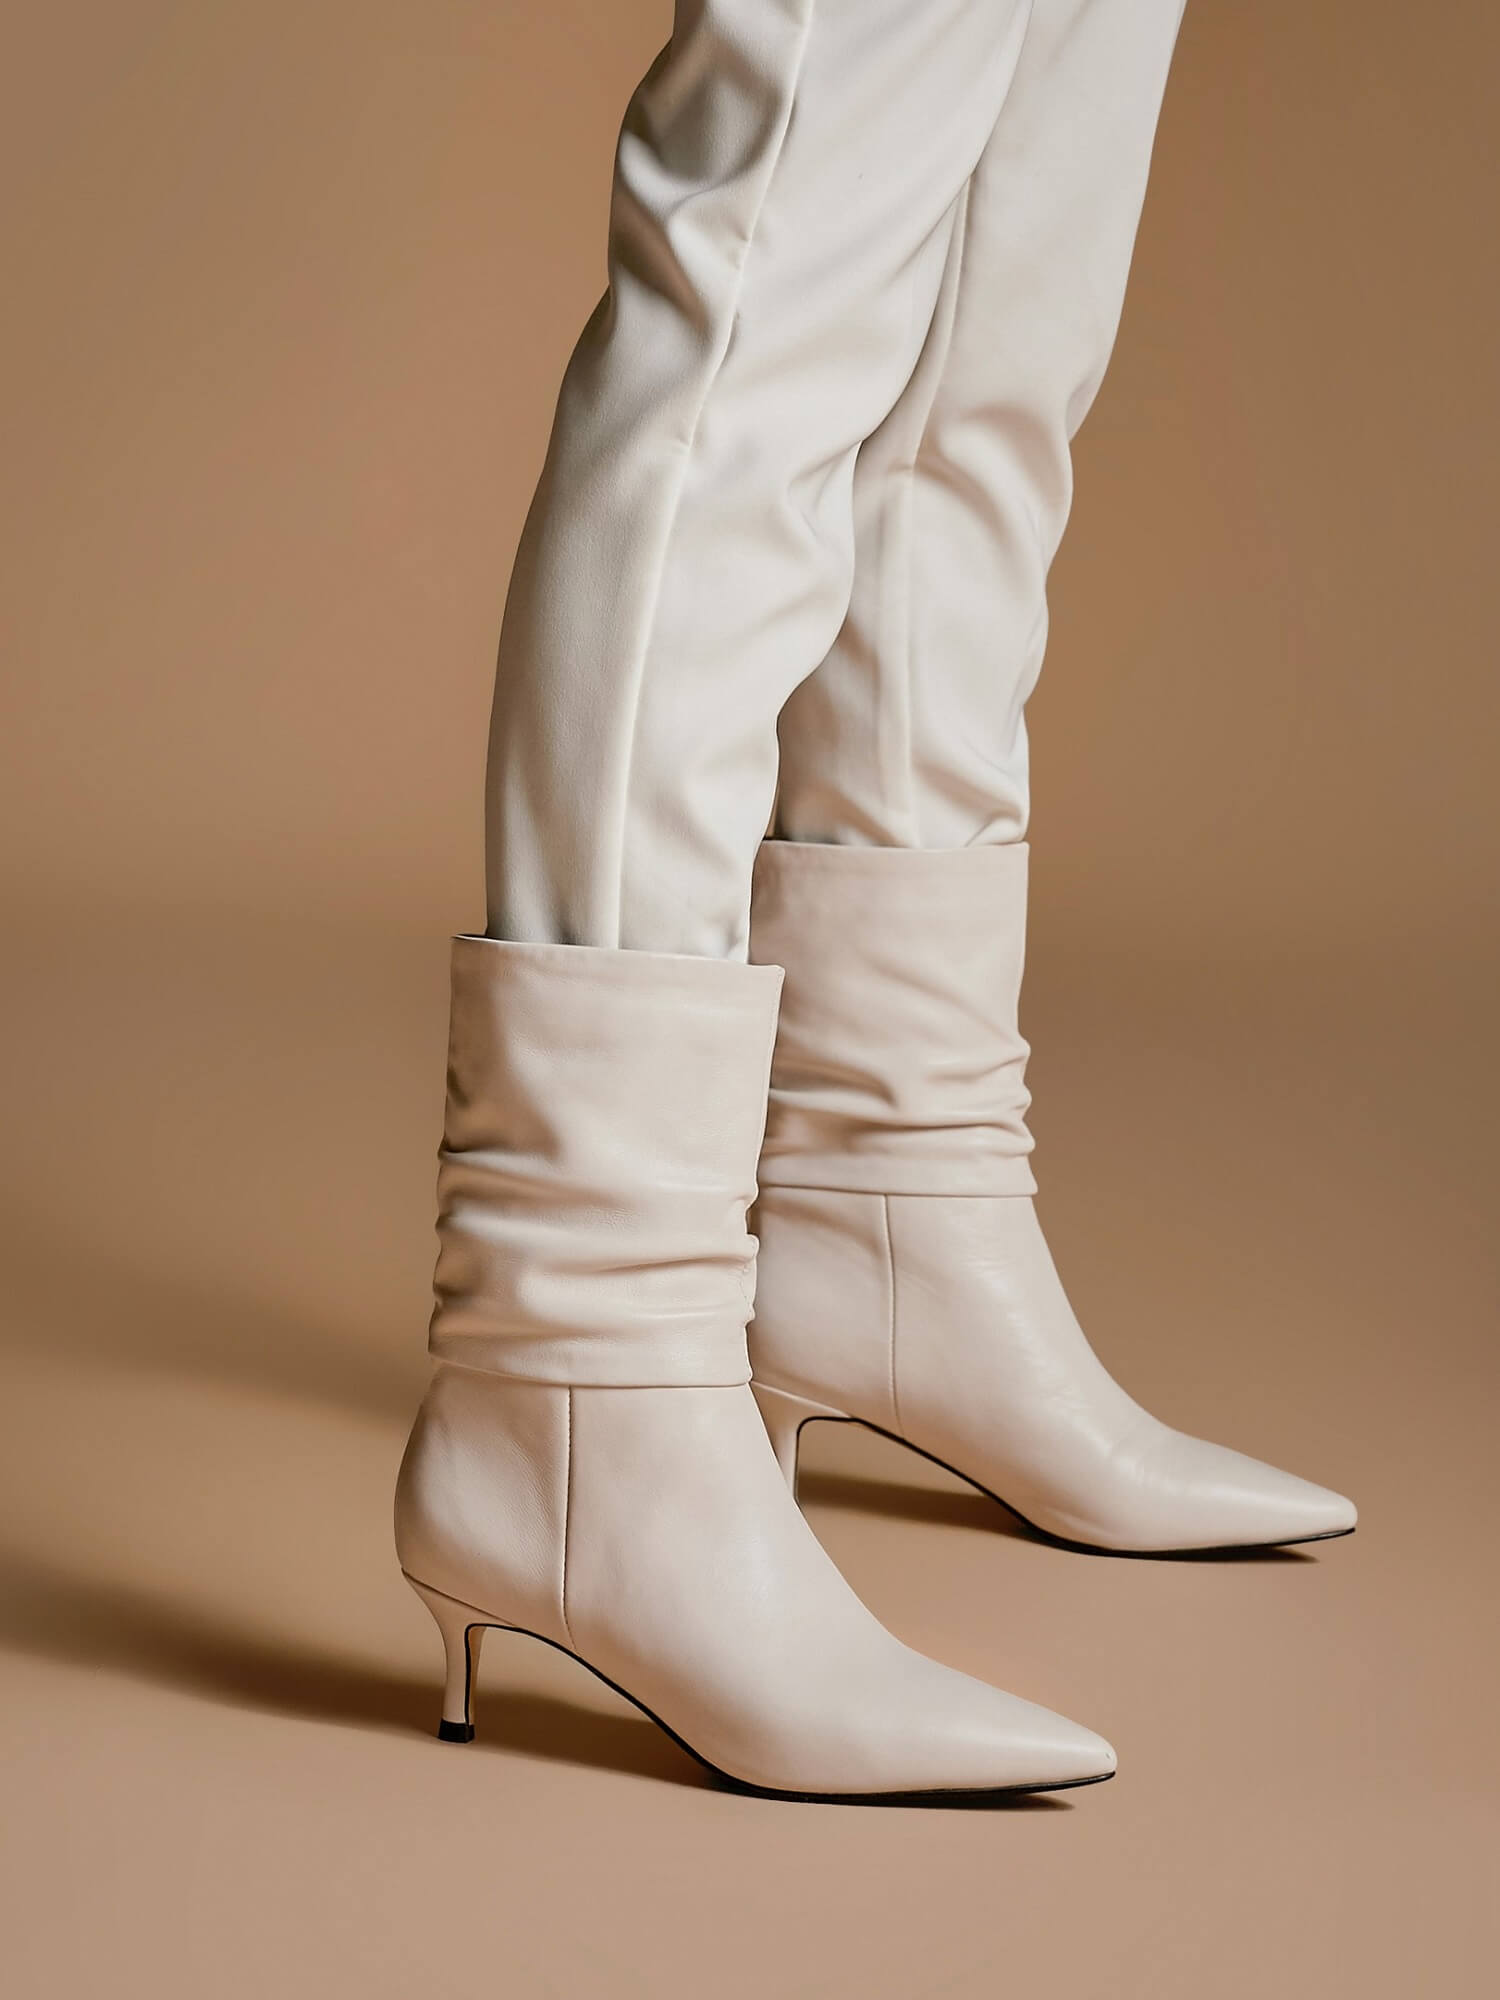 LEHOOR Kitten Heel White Mid Calf Sock Boots Women